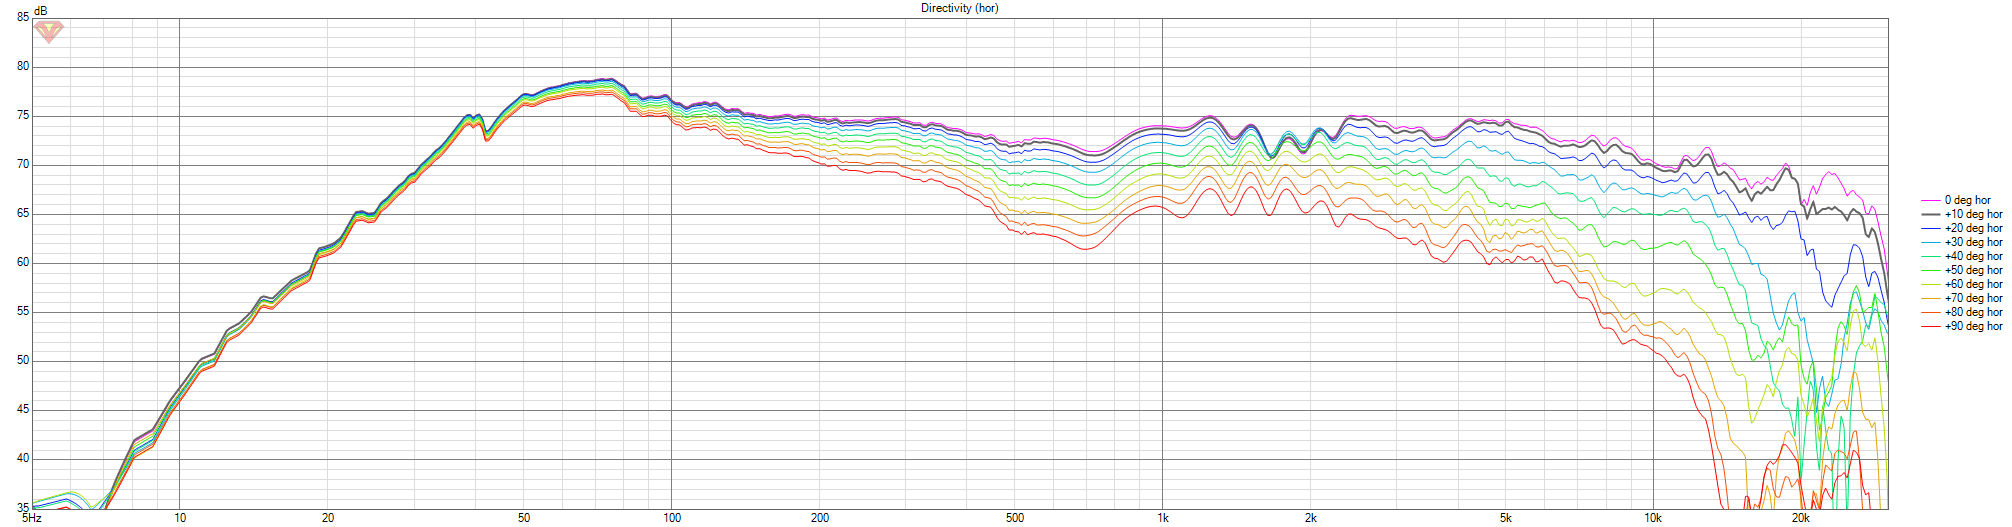 GAYA2-FINAL-START-oude-filter-V01 Directivity (hor)-NOFELT-C2-78.png